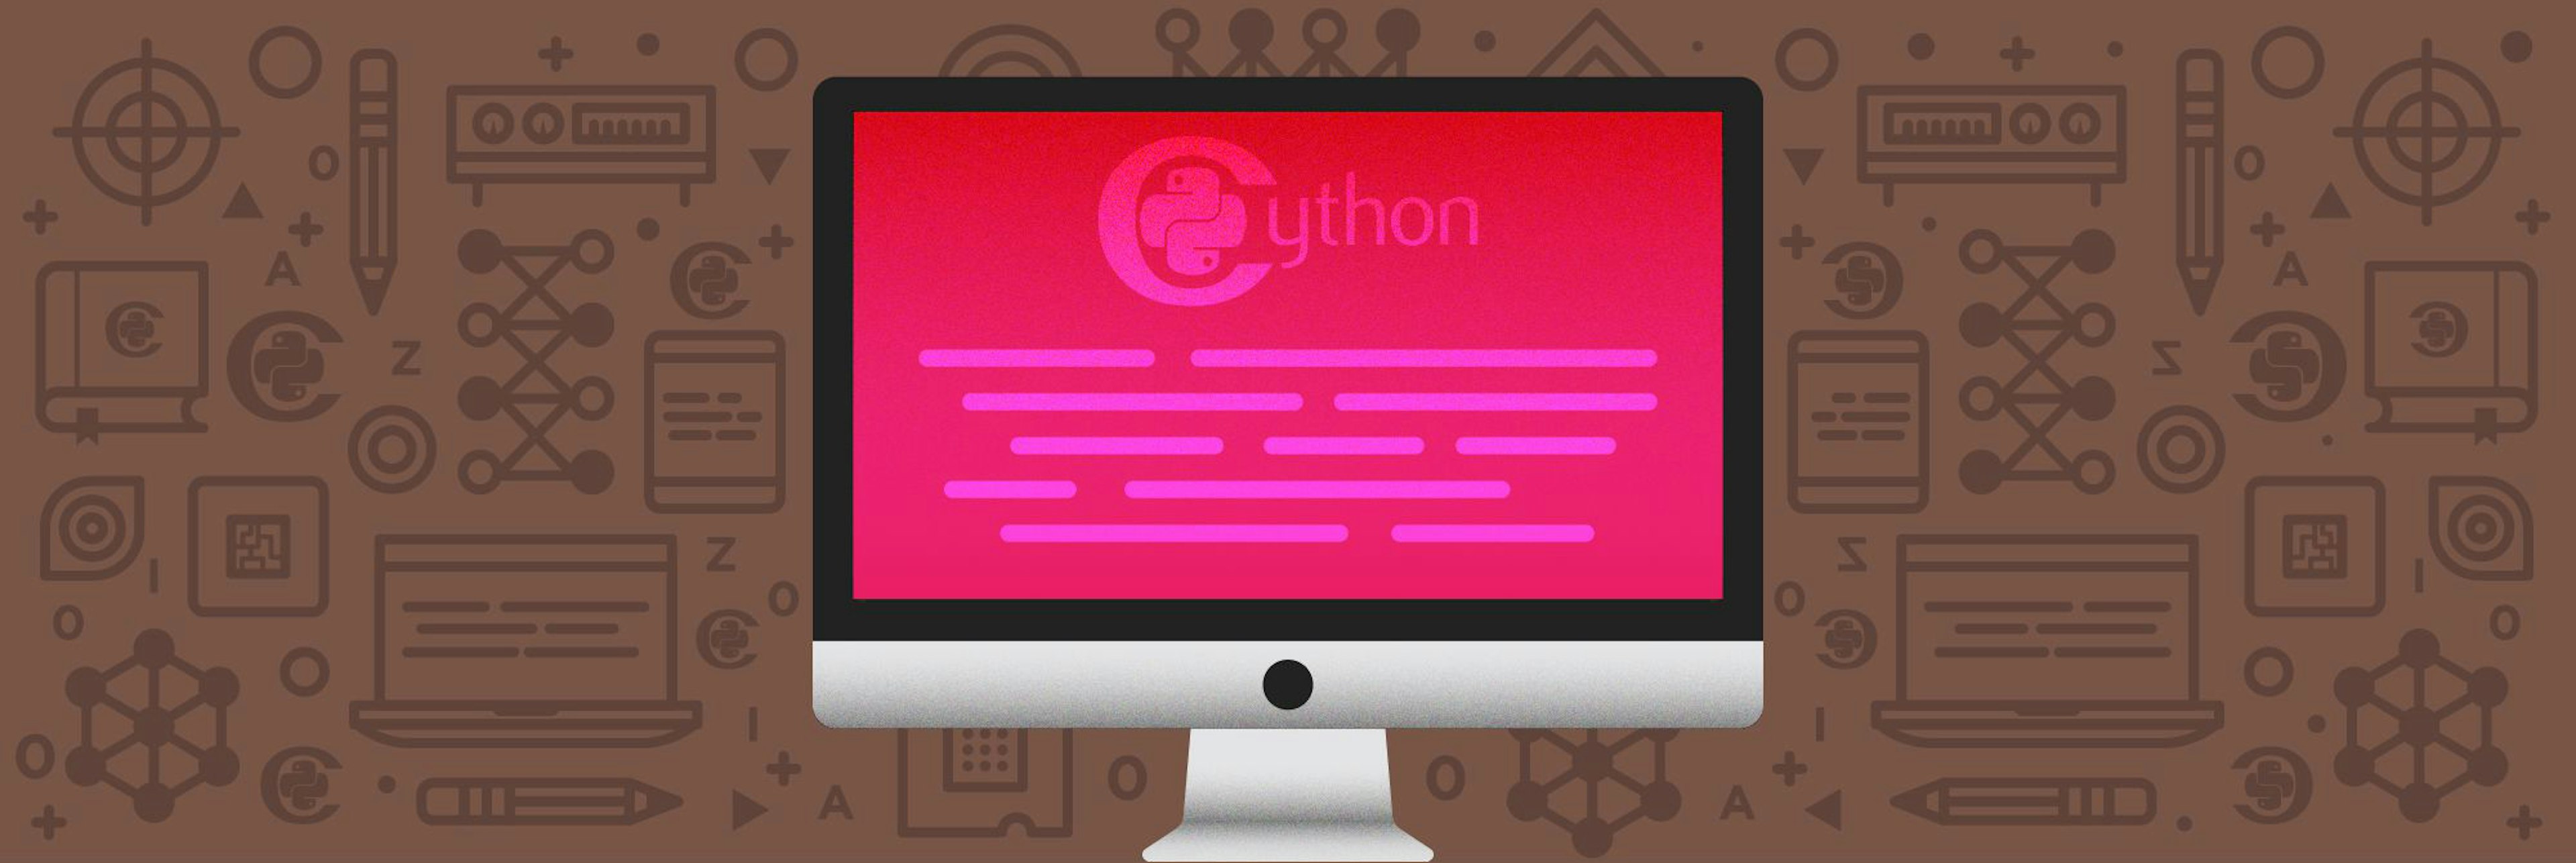 Writing C in Cython